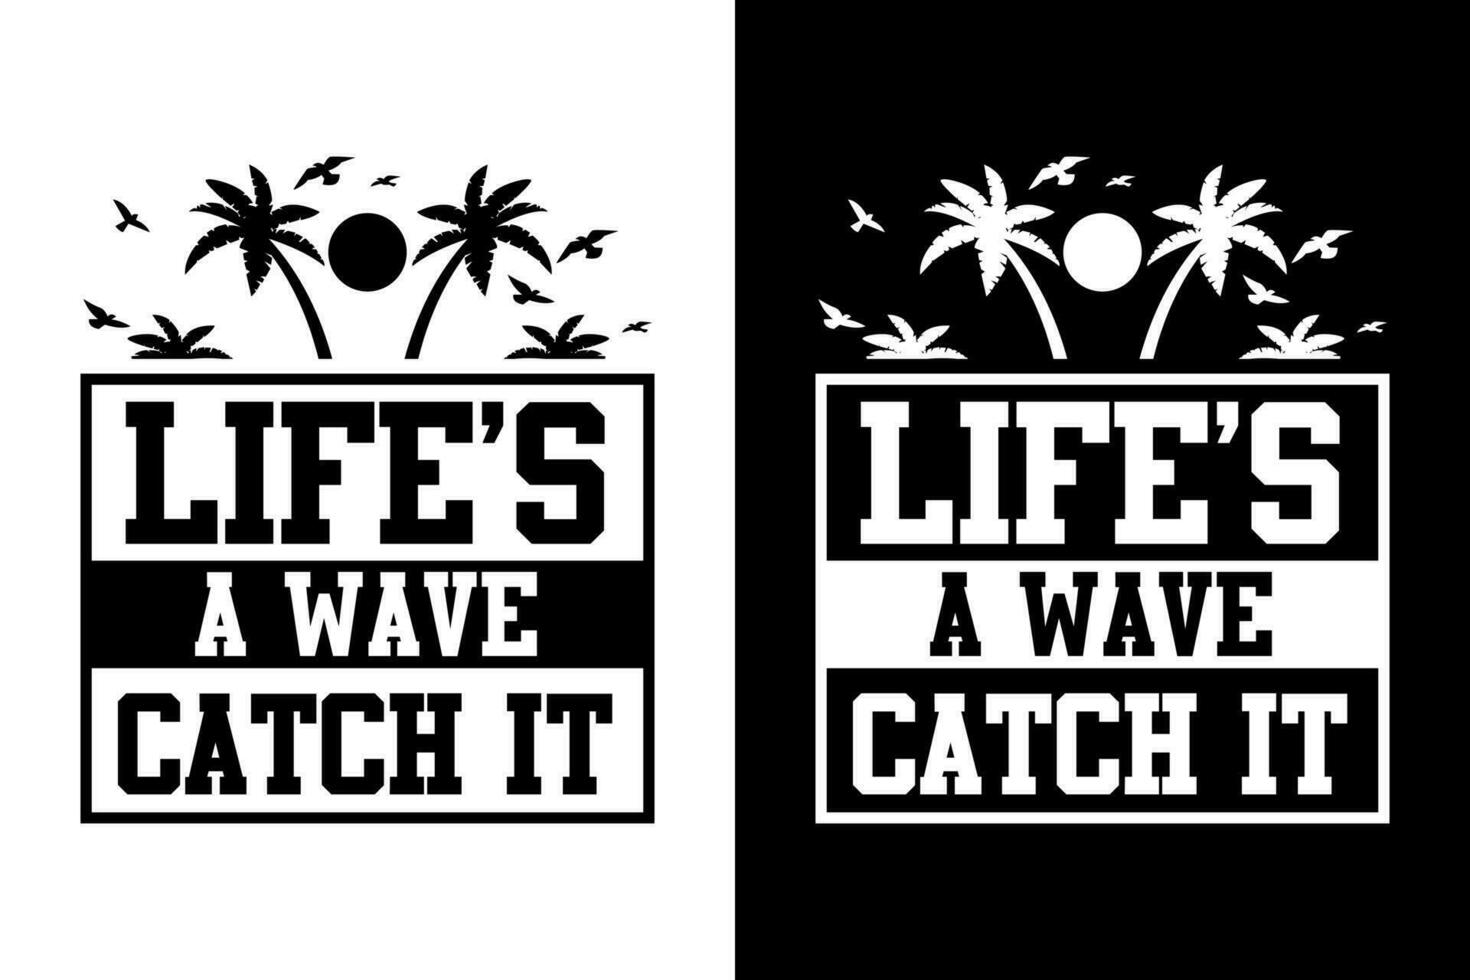 Summer t-shirt design bundle, summer beach vacation t-shirts, summer surfing t-shirt vector design